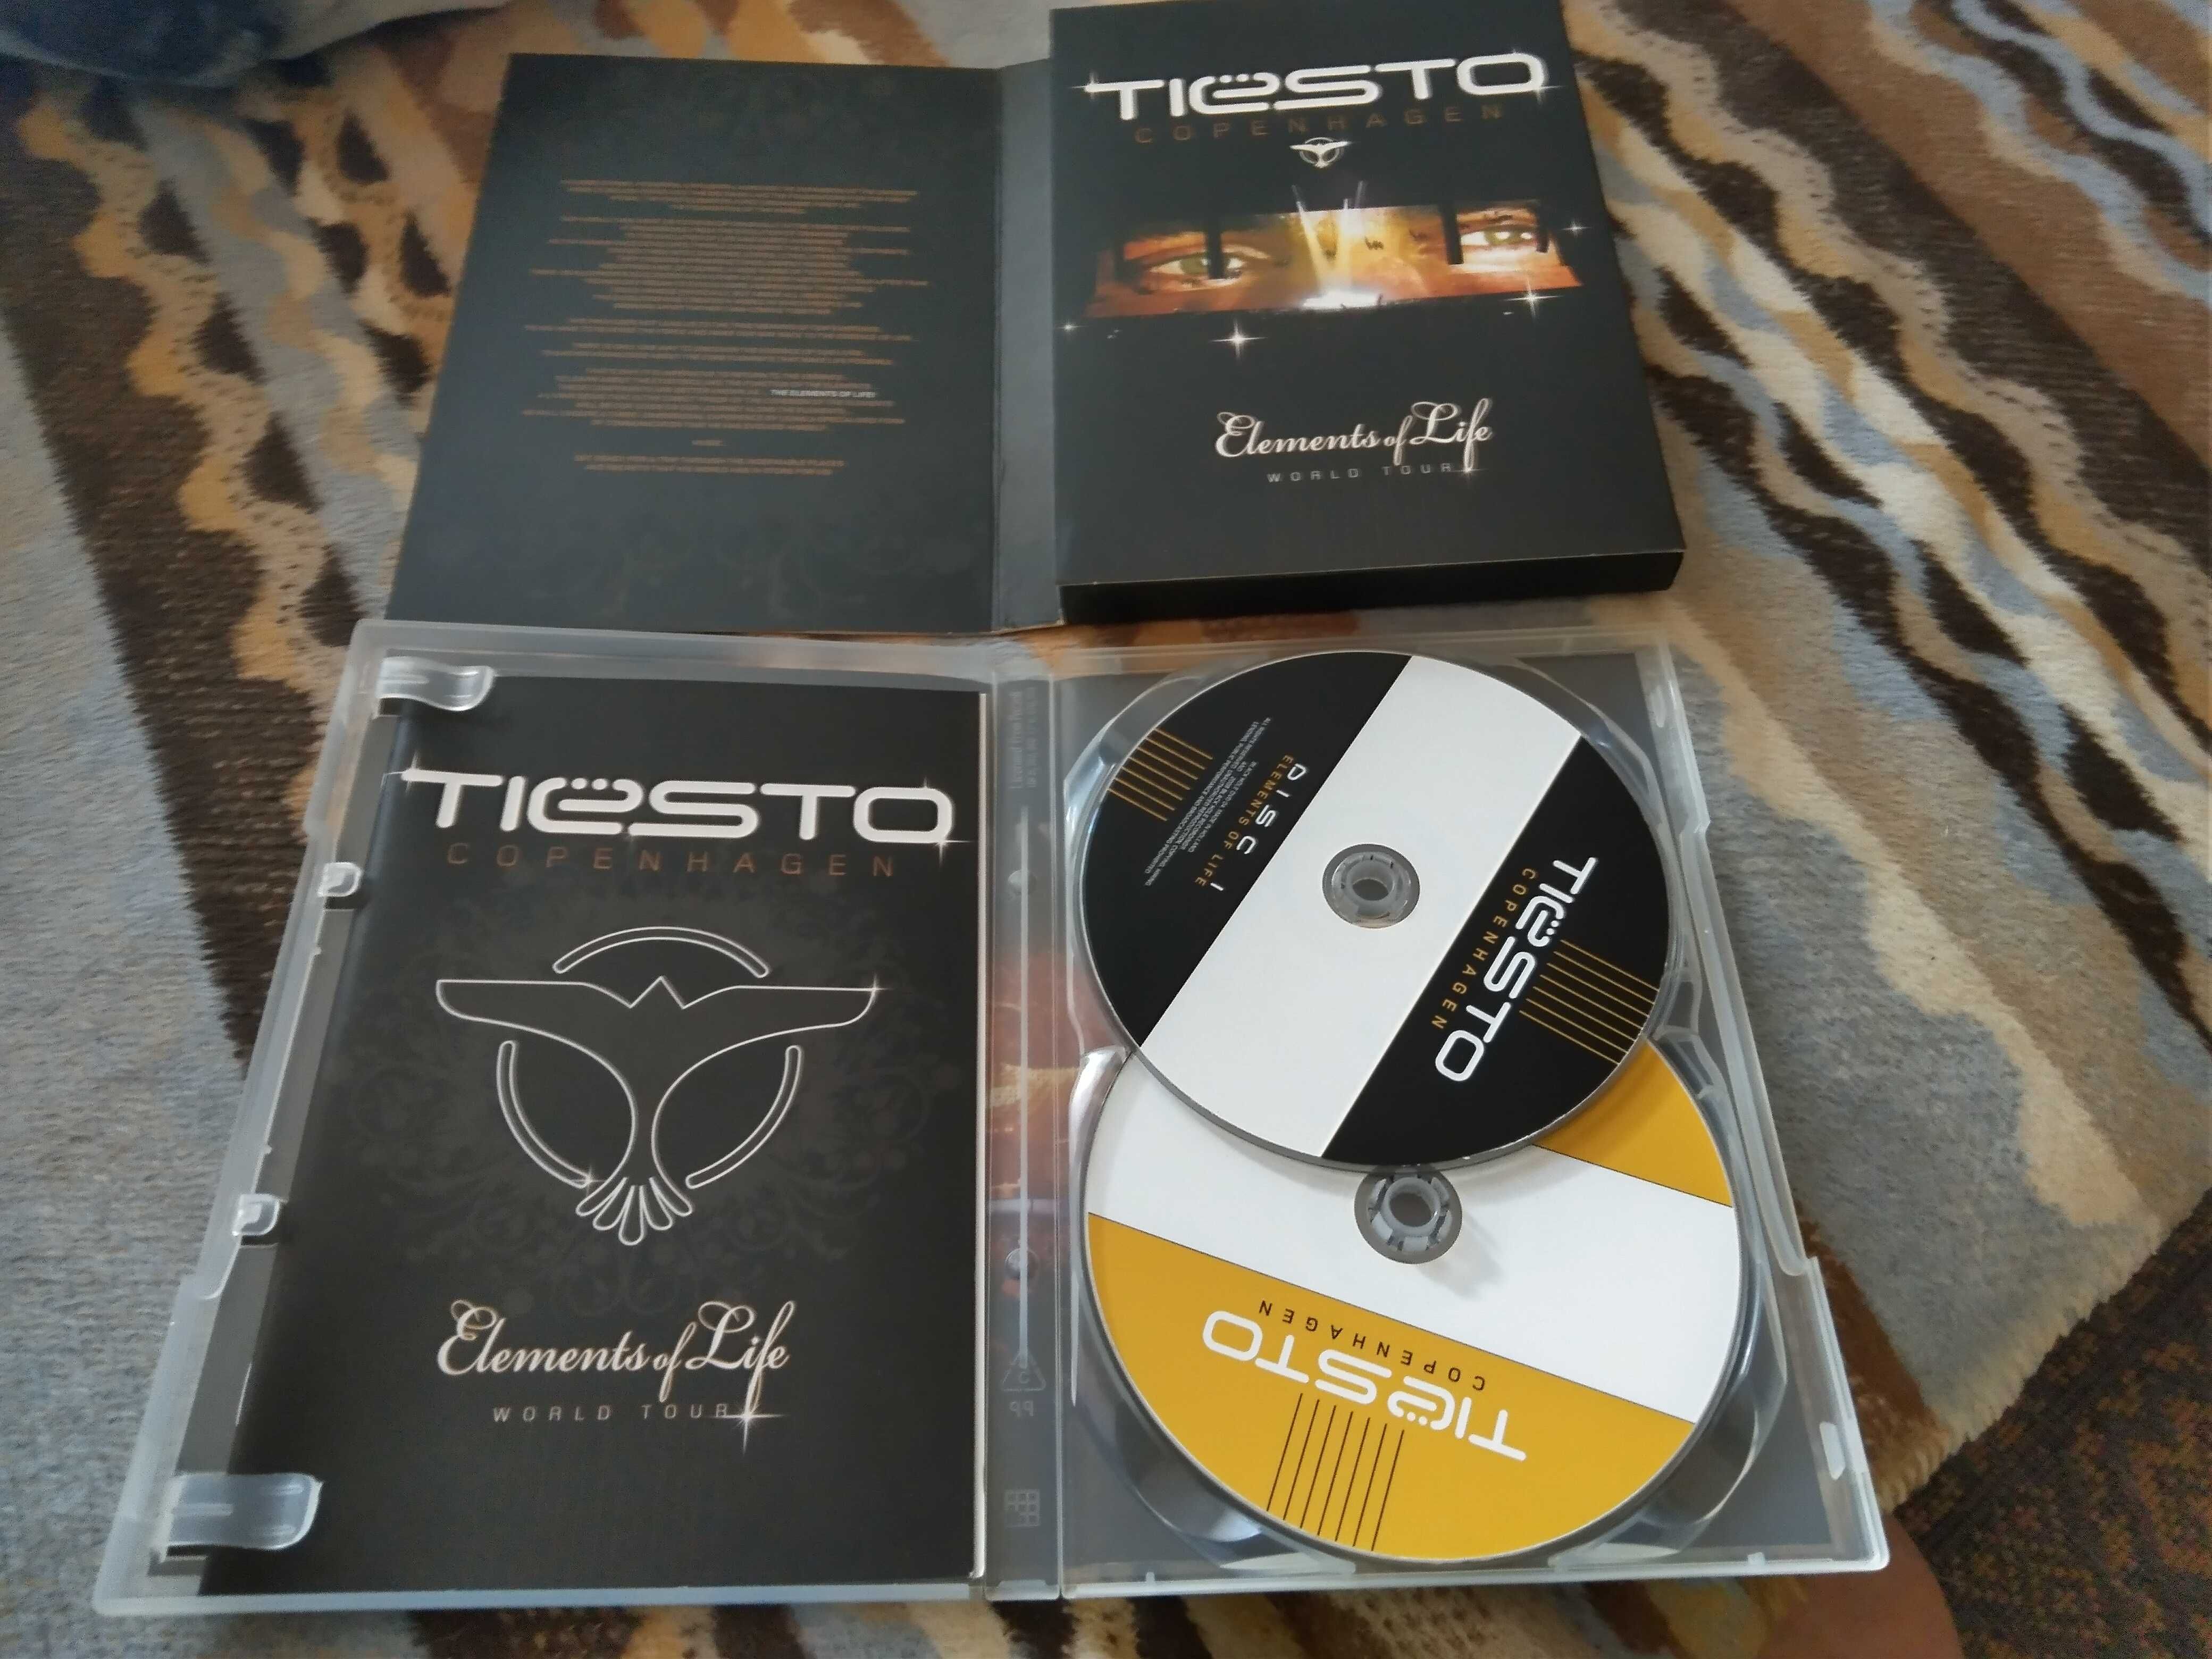 Tiesto- Copenhagen - Elements of Life 2 DVD